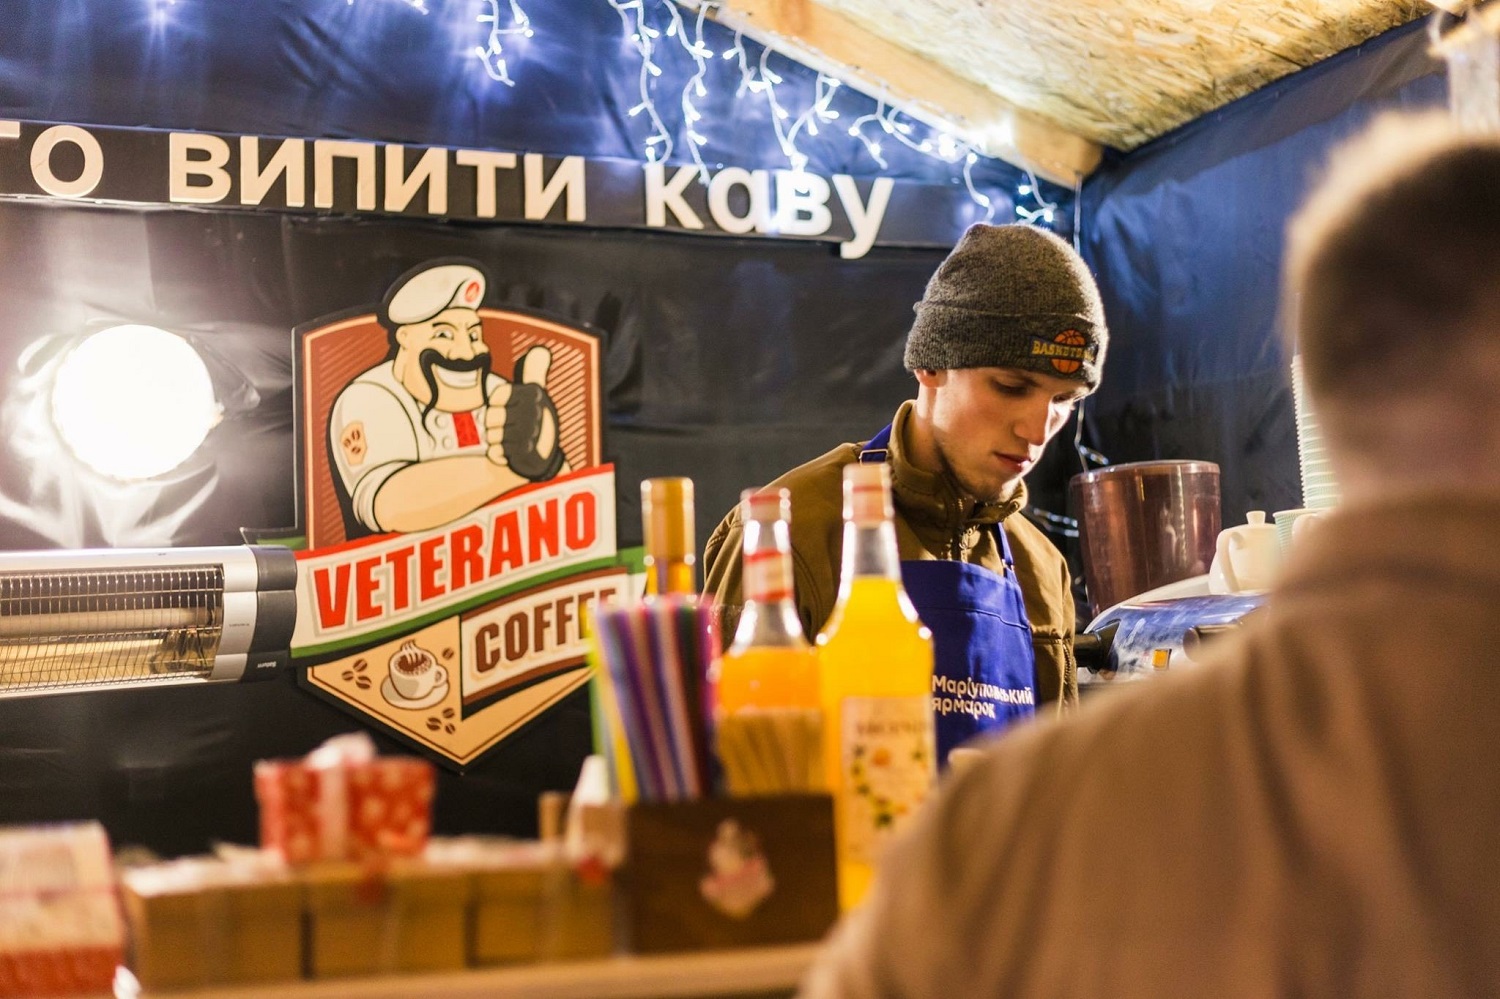 Пиццу в окоп заказывали? Как молодые украинцы поднимают Донбасс #ВластьЭтоМы